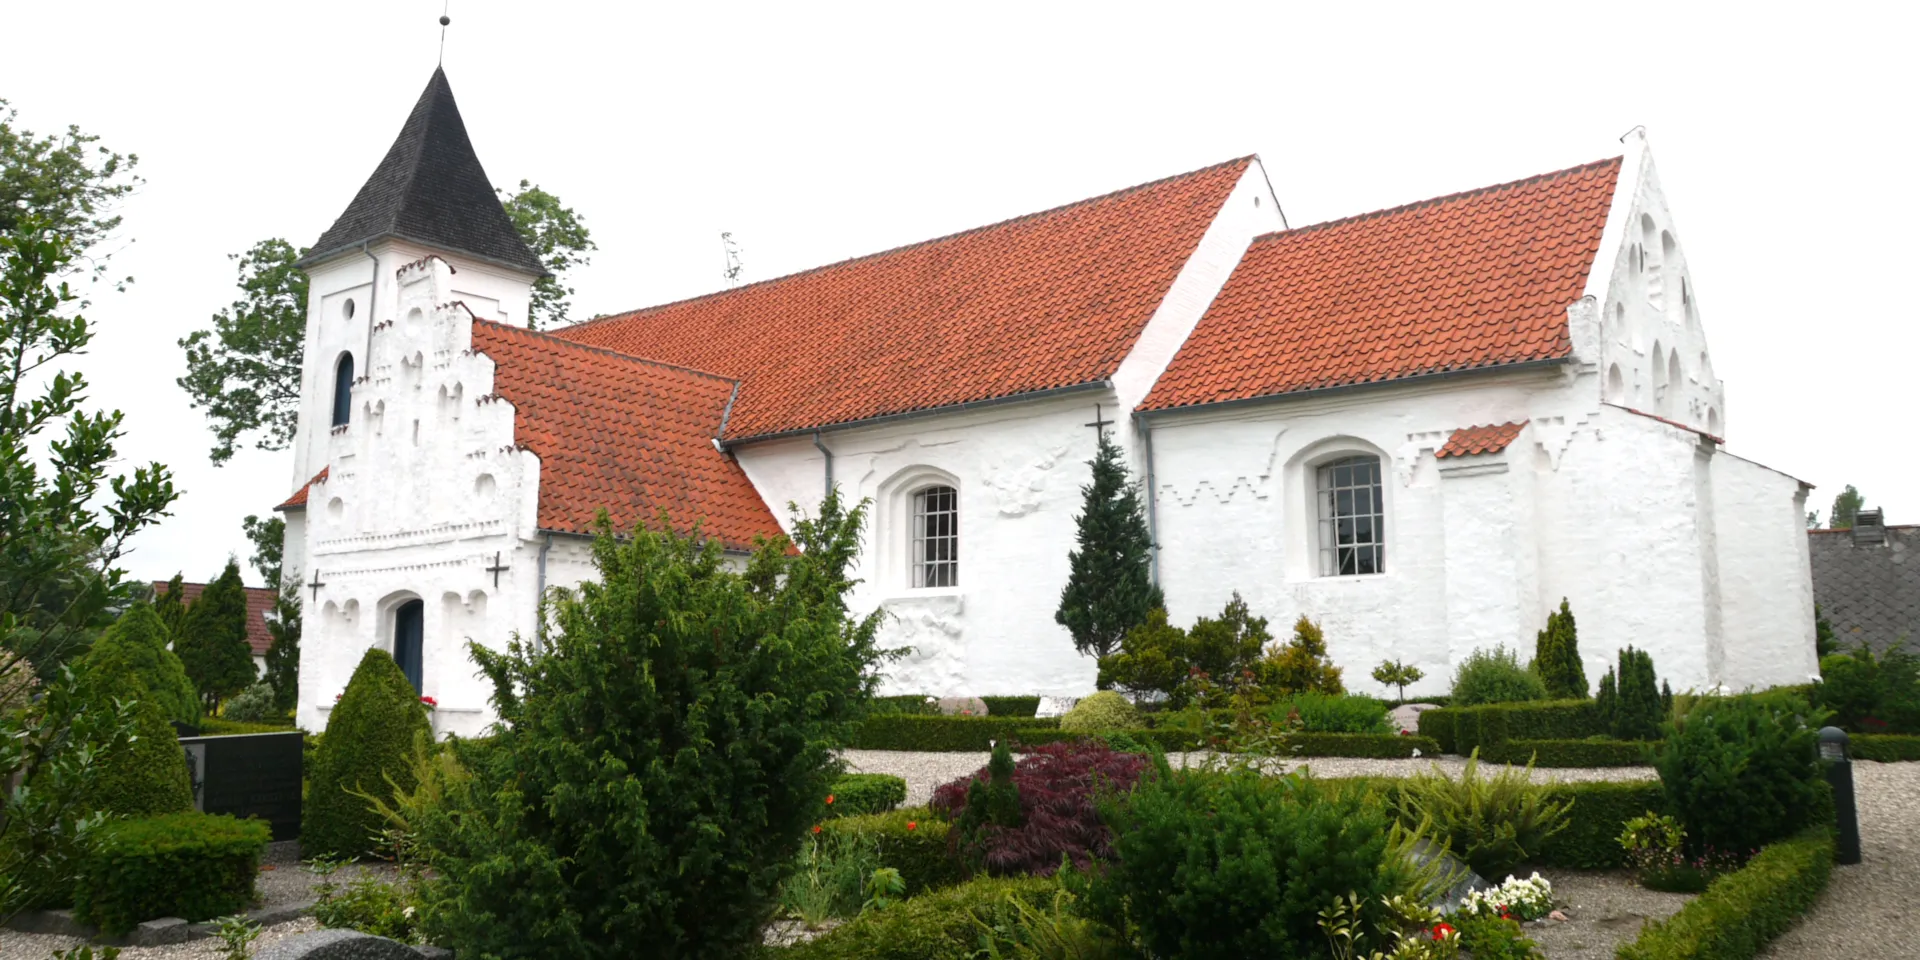 Roerslev Kirke